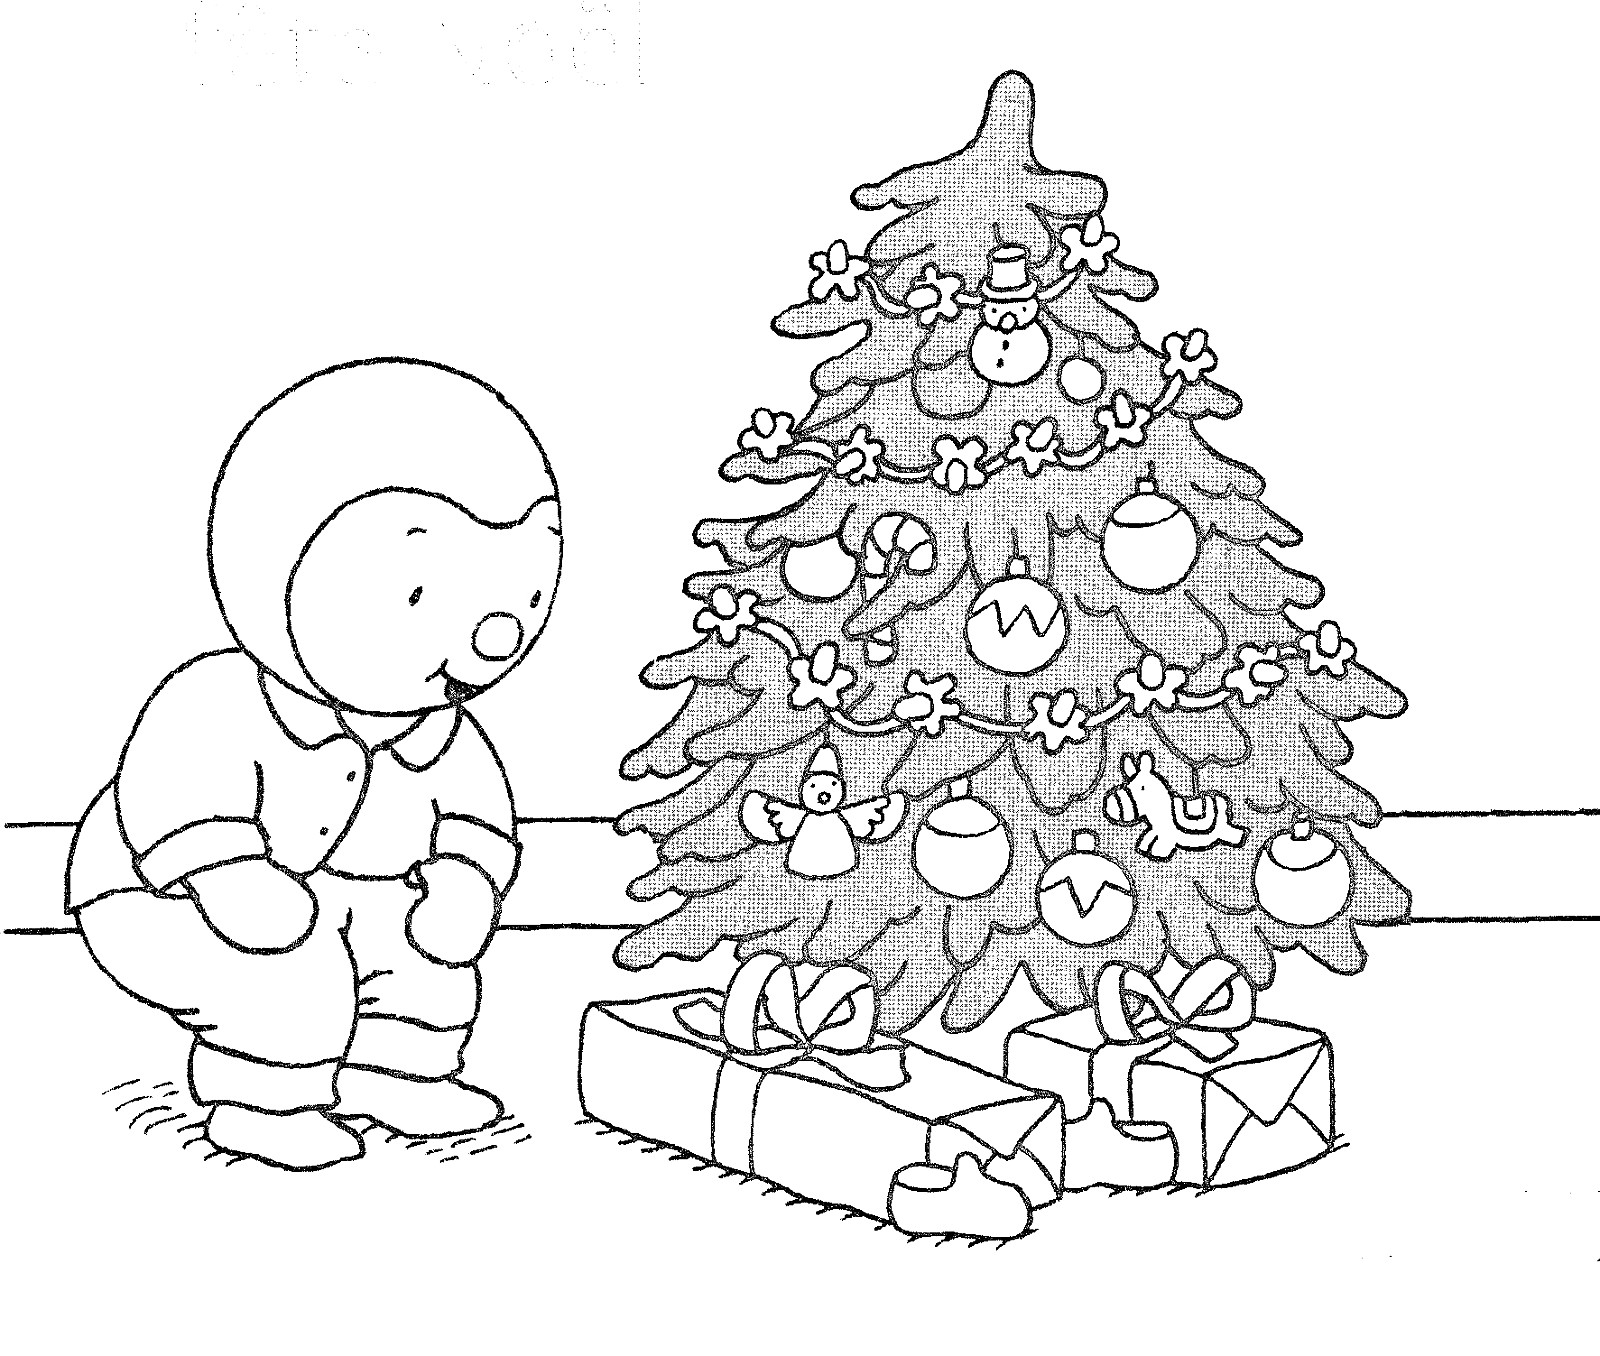 T'choupi celebra la Navidad al pie de su árbol: ¡tiene muchos regalos!